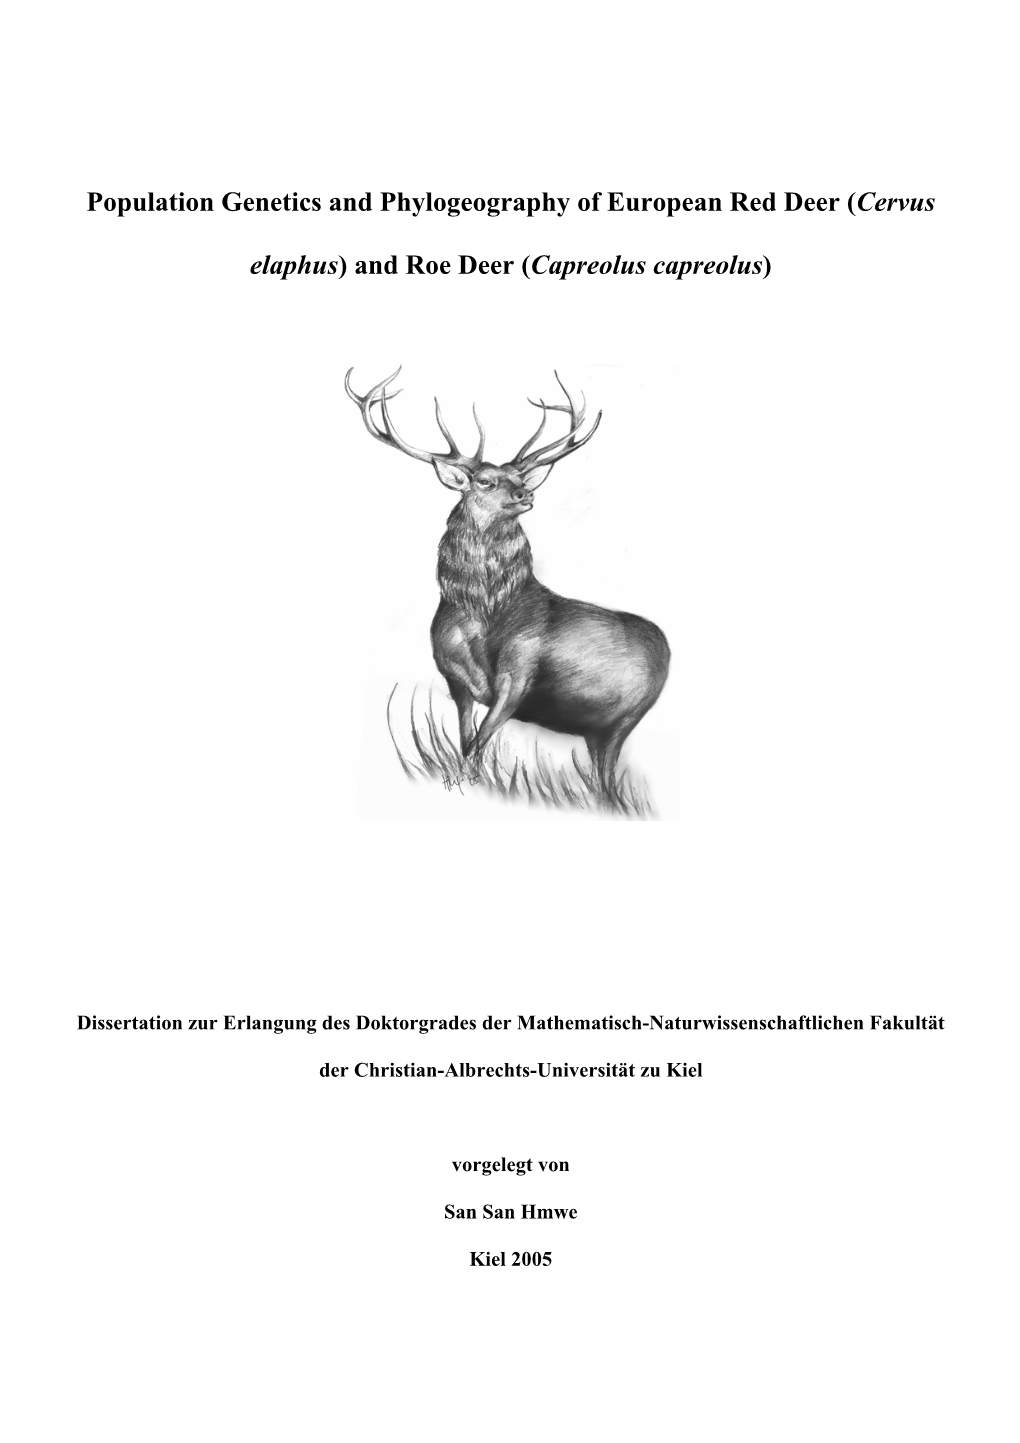 (Cervus Elaphus) and Roe Deer